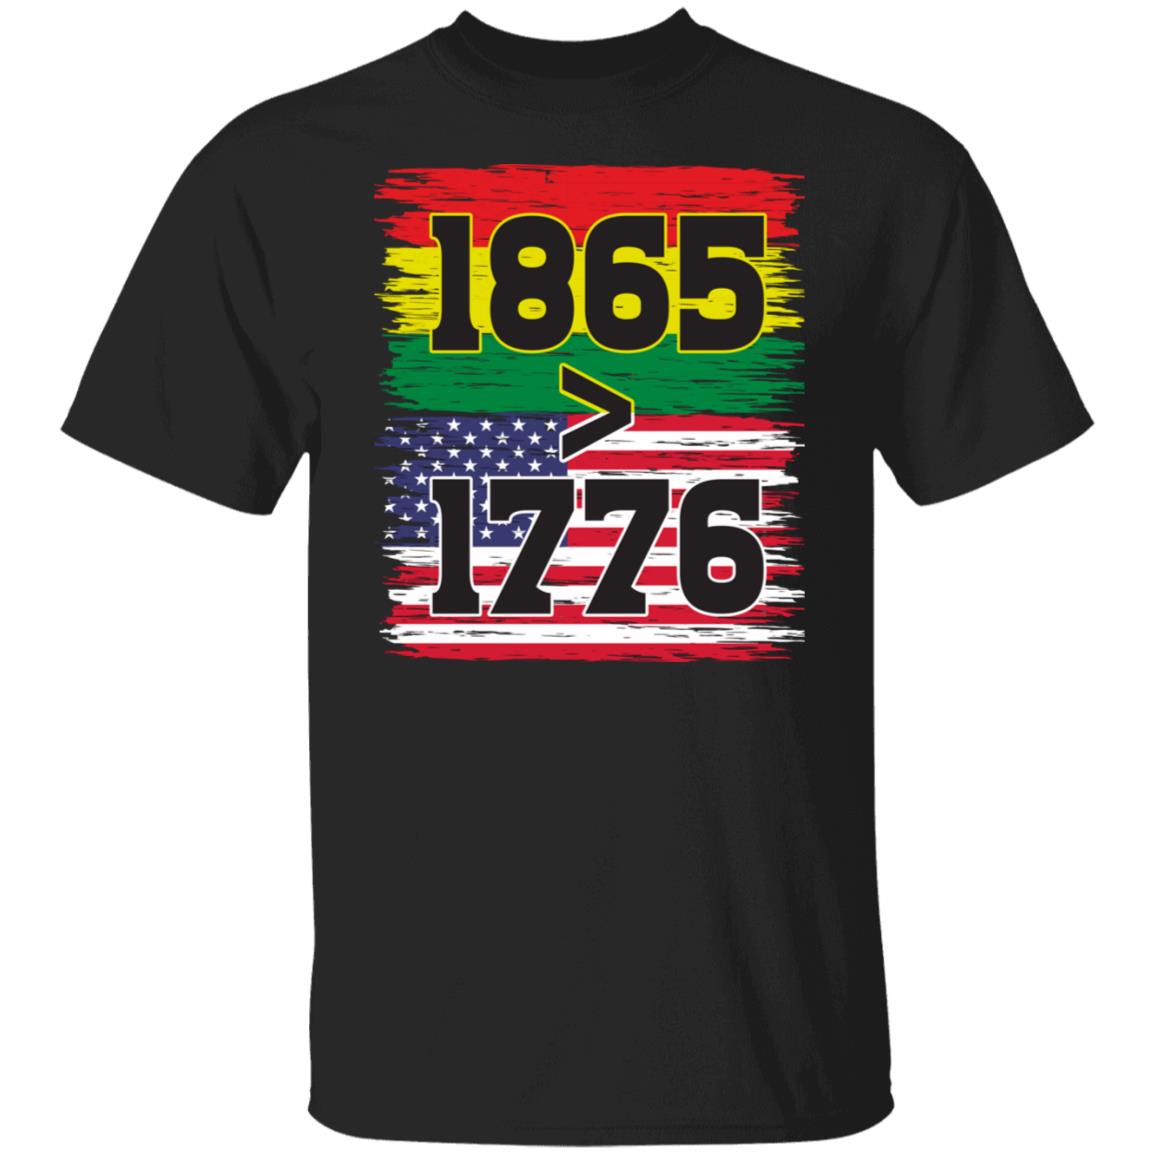 1865 > 1976 Juneteenth T-shirt Apparel Gearment Unisex Tee Black S